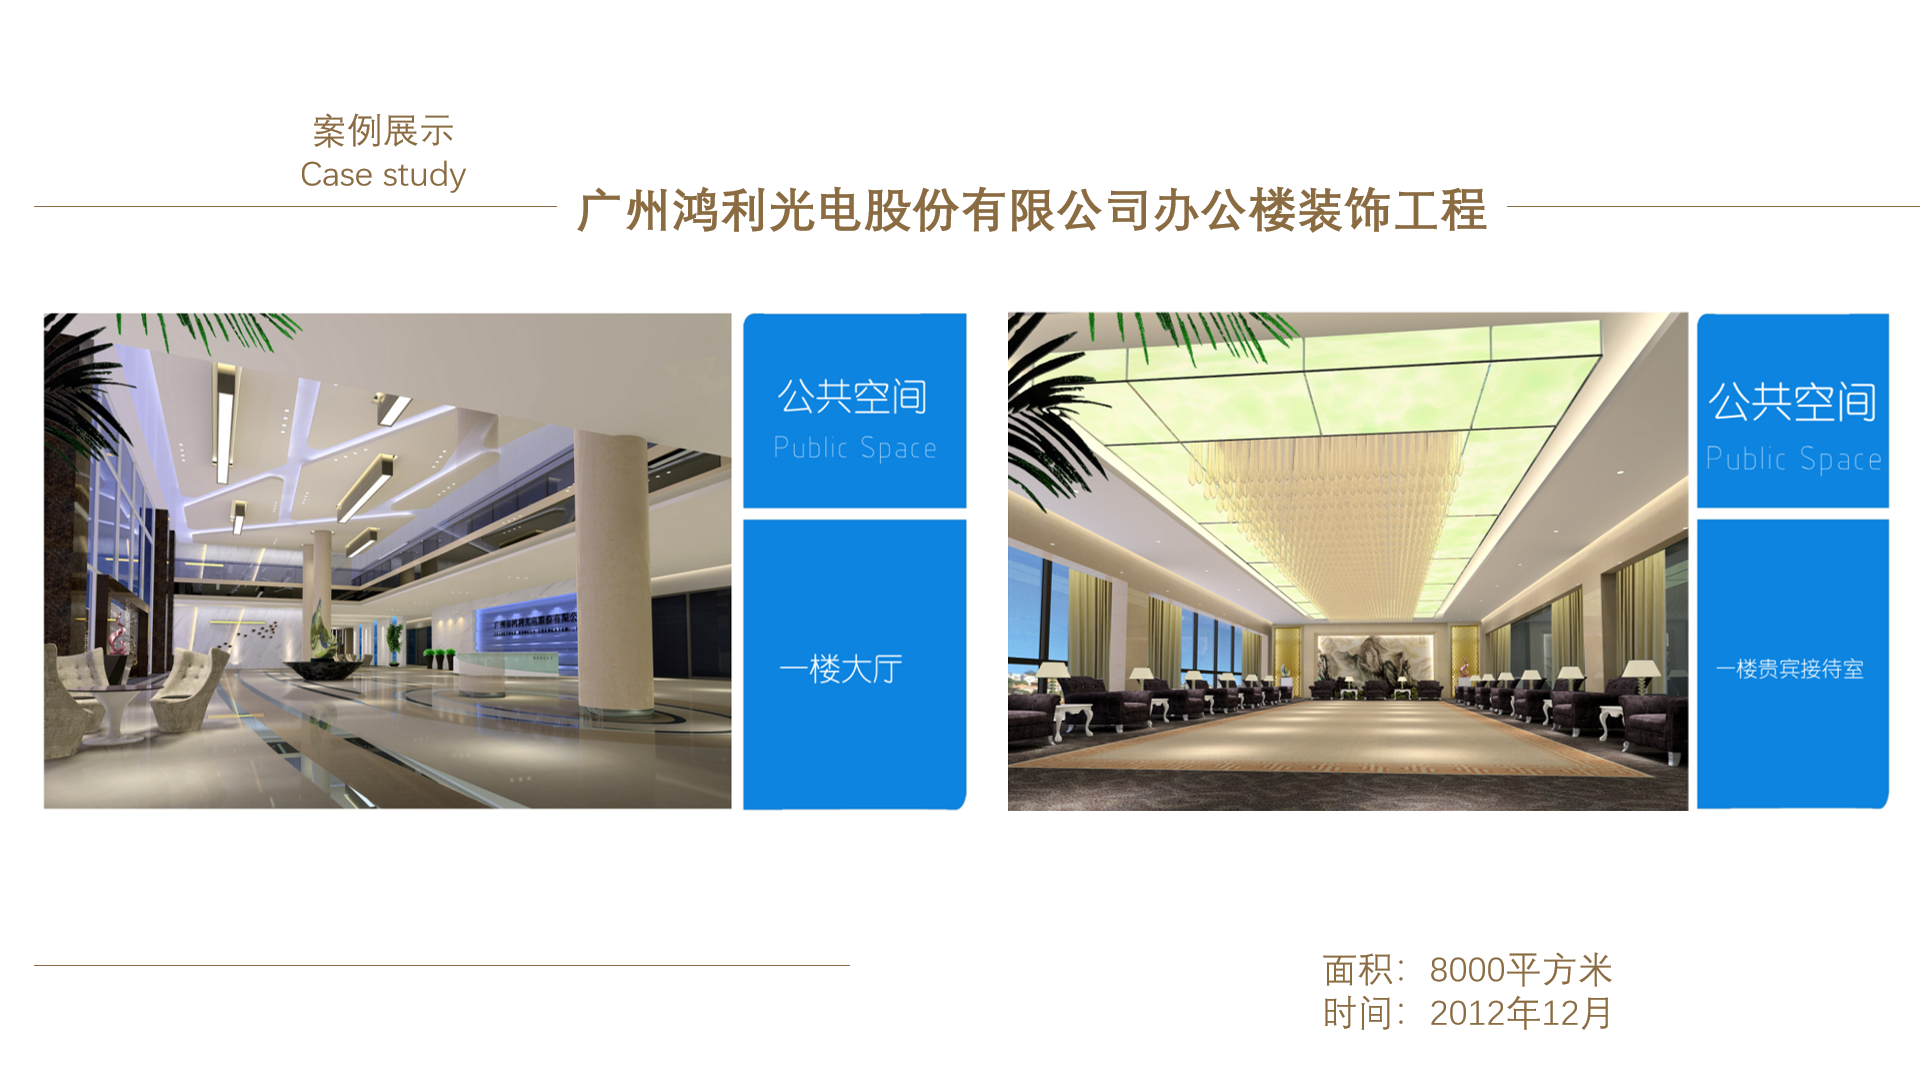 廣州鴻利光電股份有限公司辦公樓裝飾工程